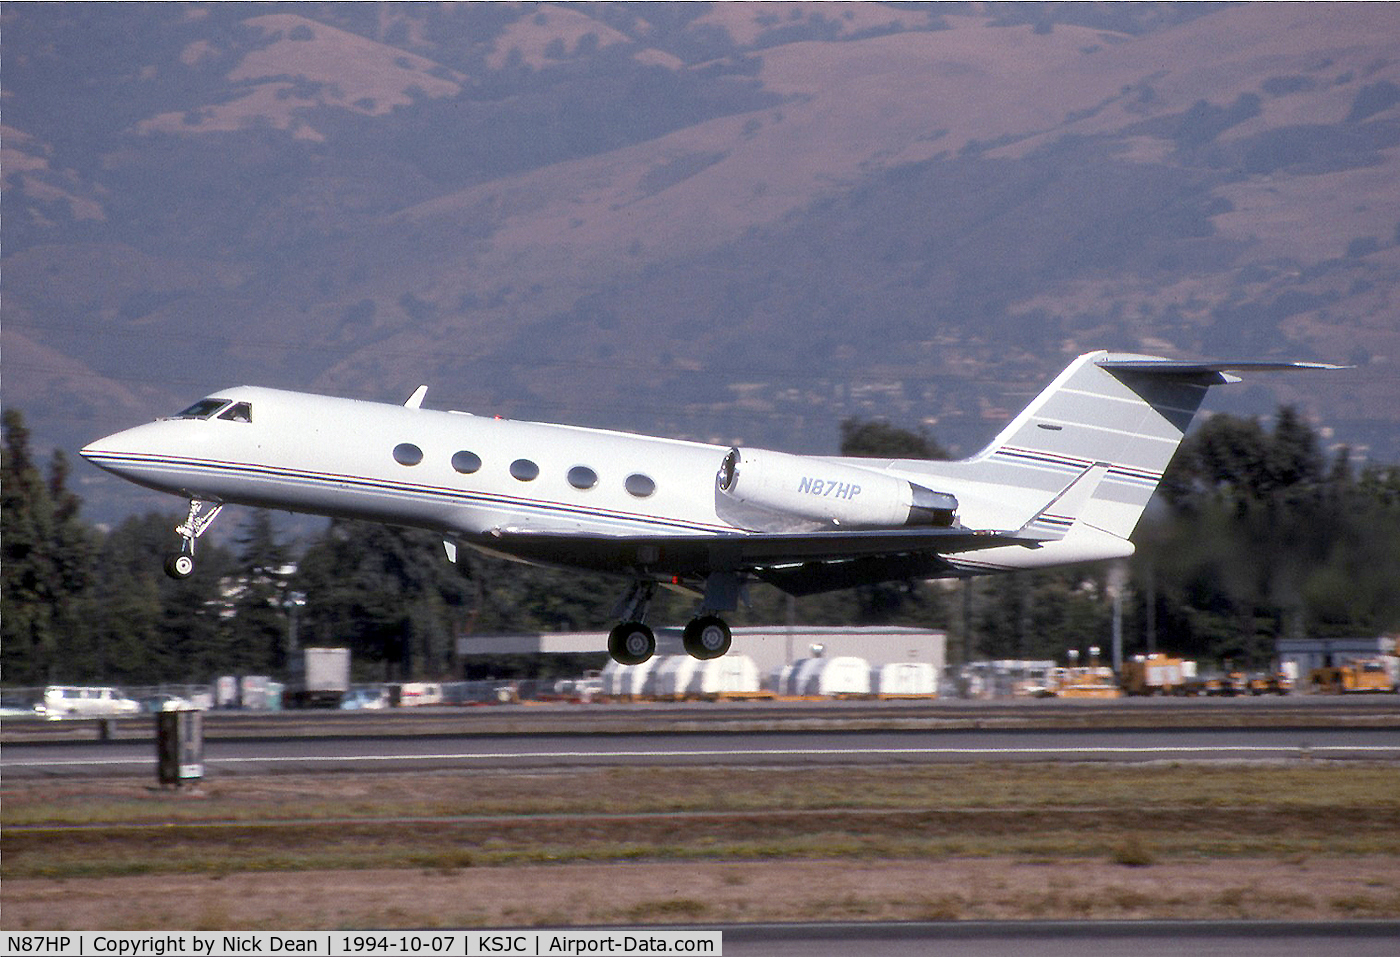 N87HP, 1981 Grumman G1159A Gulfstream III C/N 338, KSJC